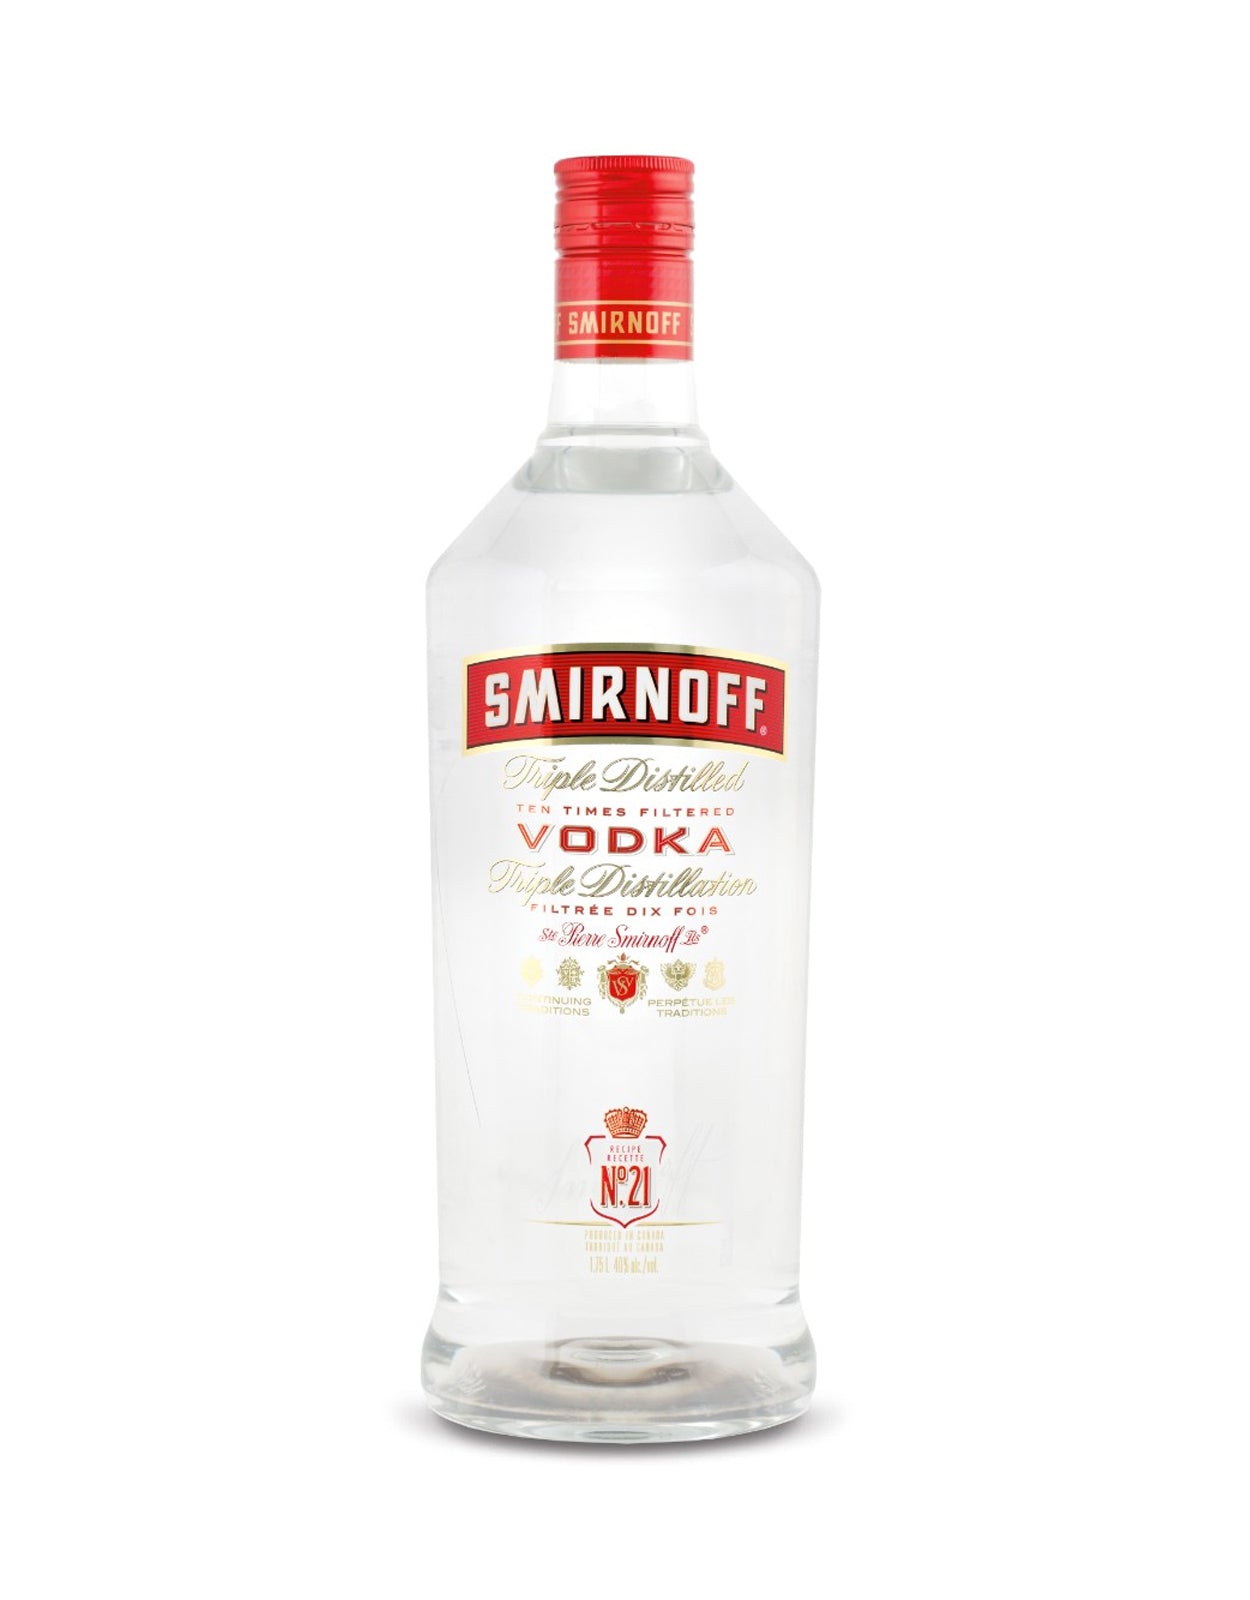 Smirnoff Vodka - 1.14 Litre Bottle (Glass Bottle)